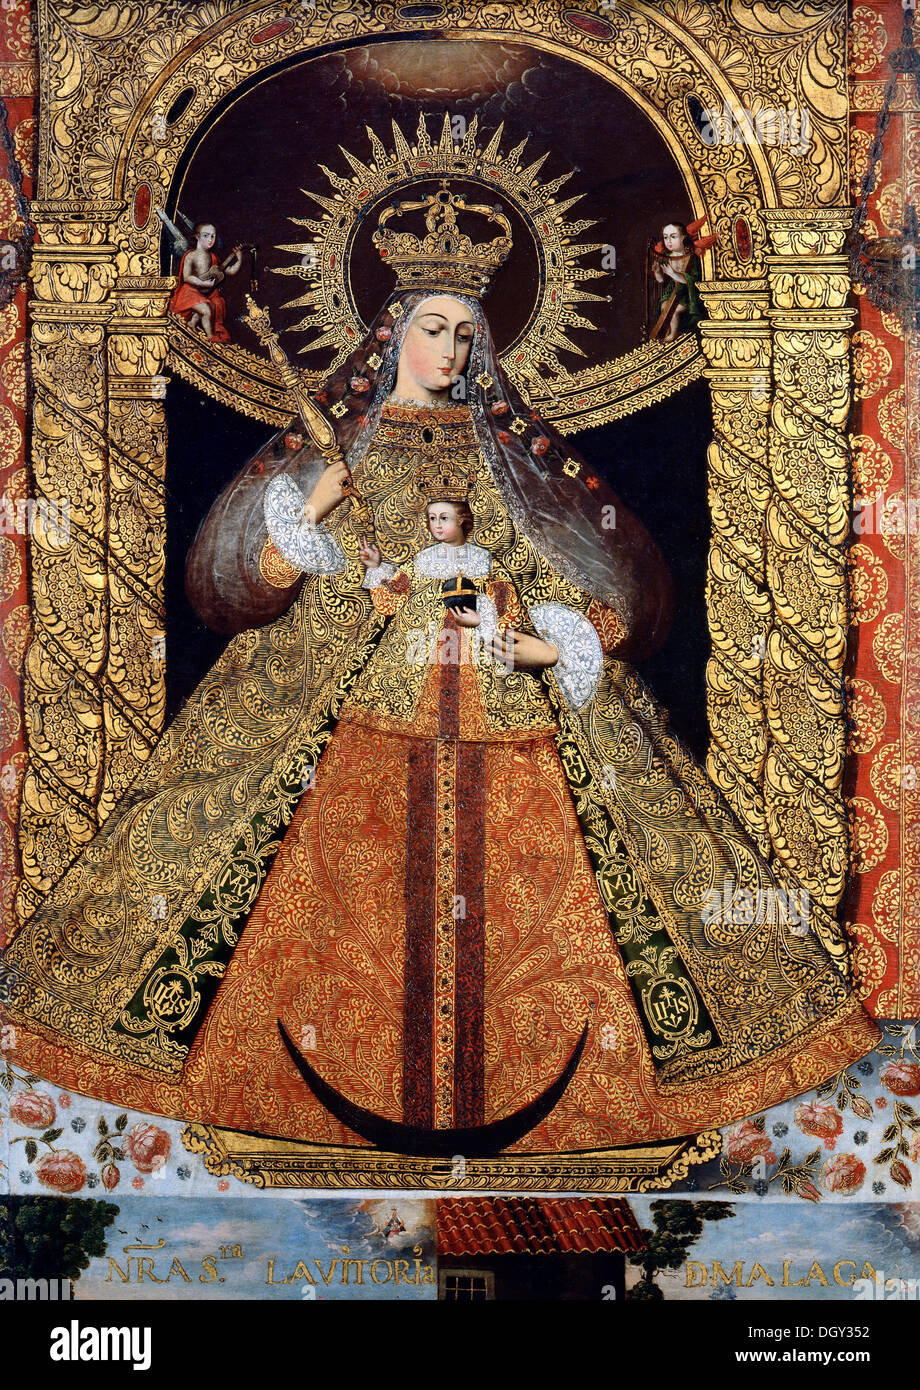 La Bolivie, Vierge de la victoire de Malaga. Vers 1740. Huile sur toile à la feuille d'or. Musée d'Art de Denver, Denver, Etats-Unis. Banque D'Images